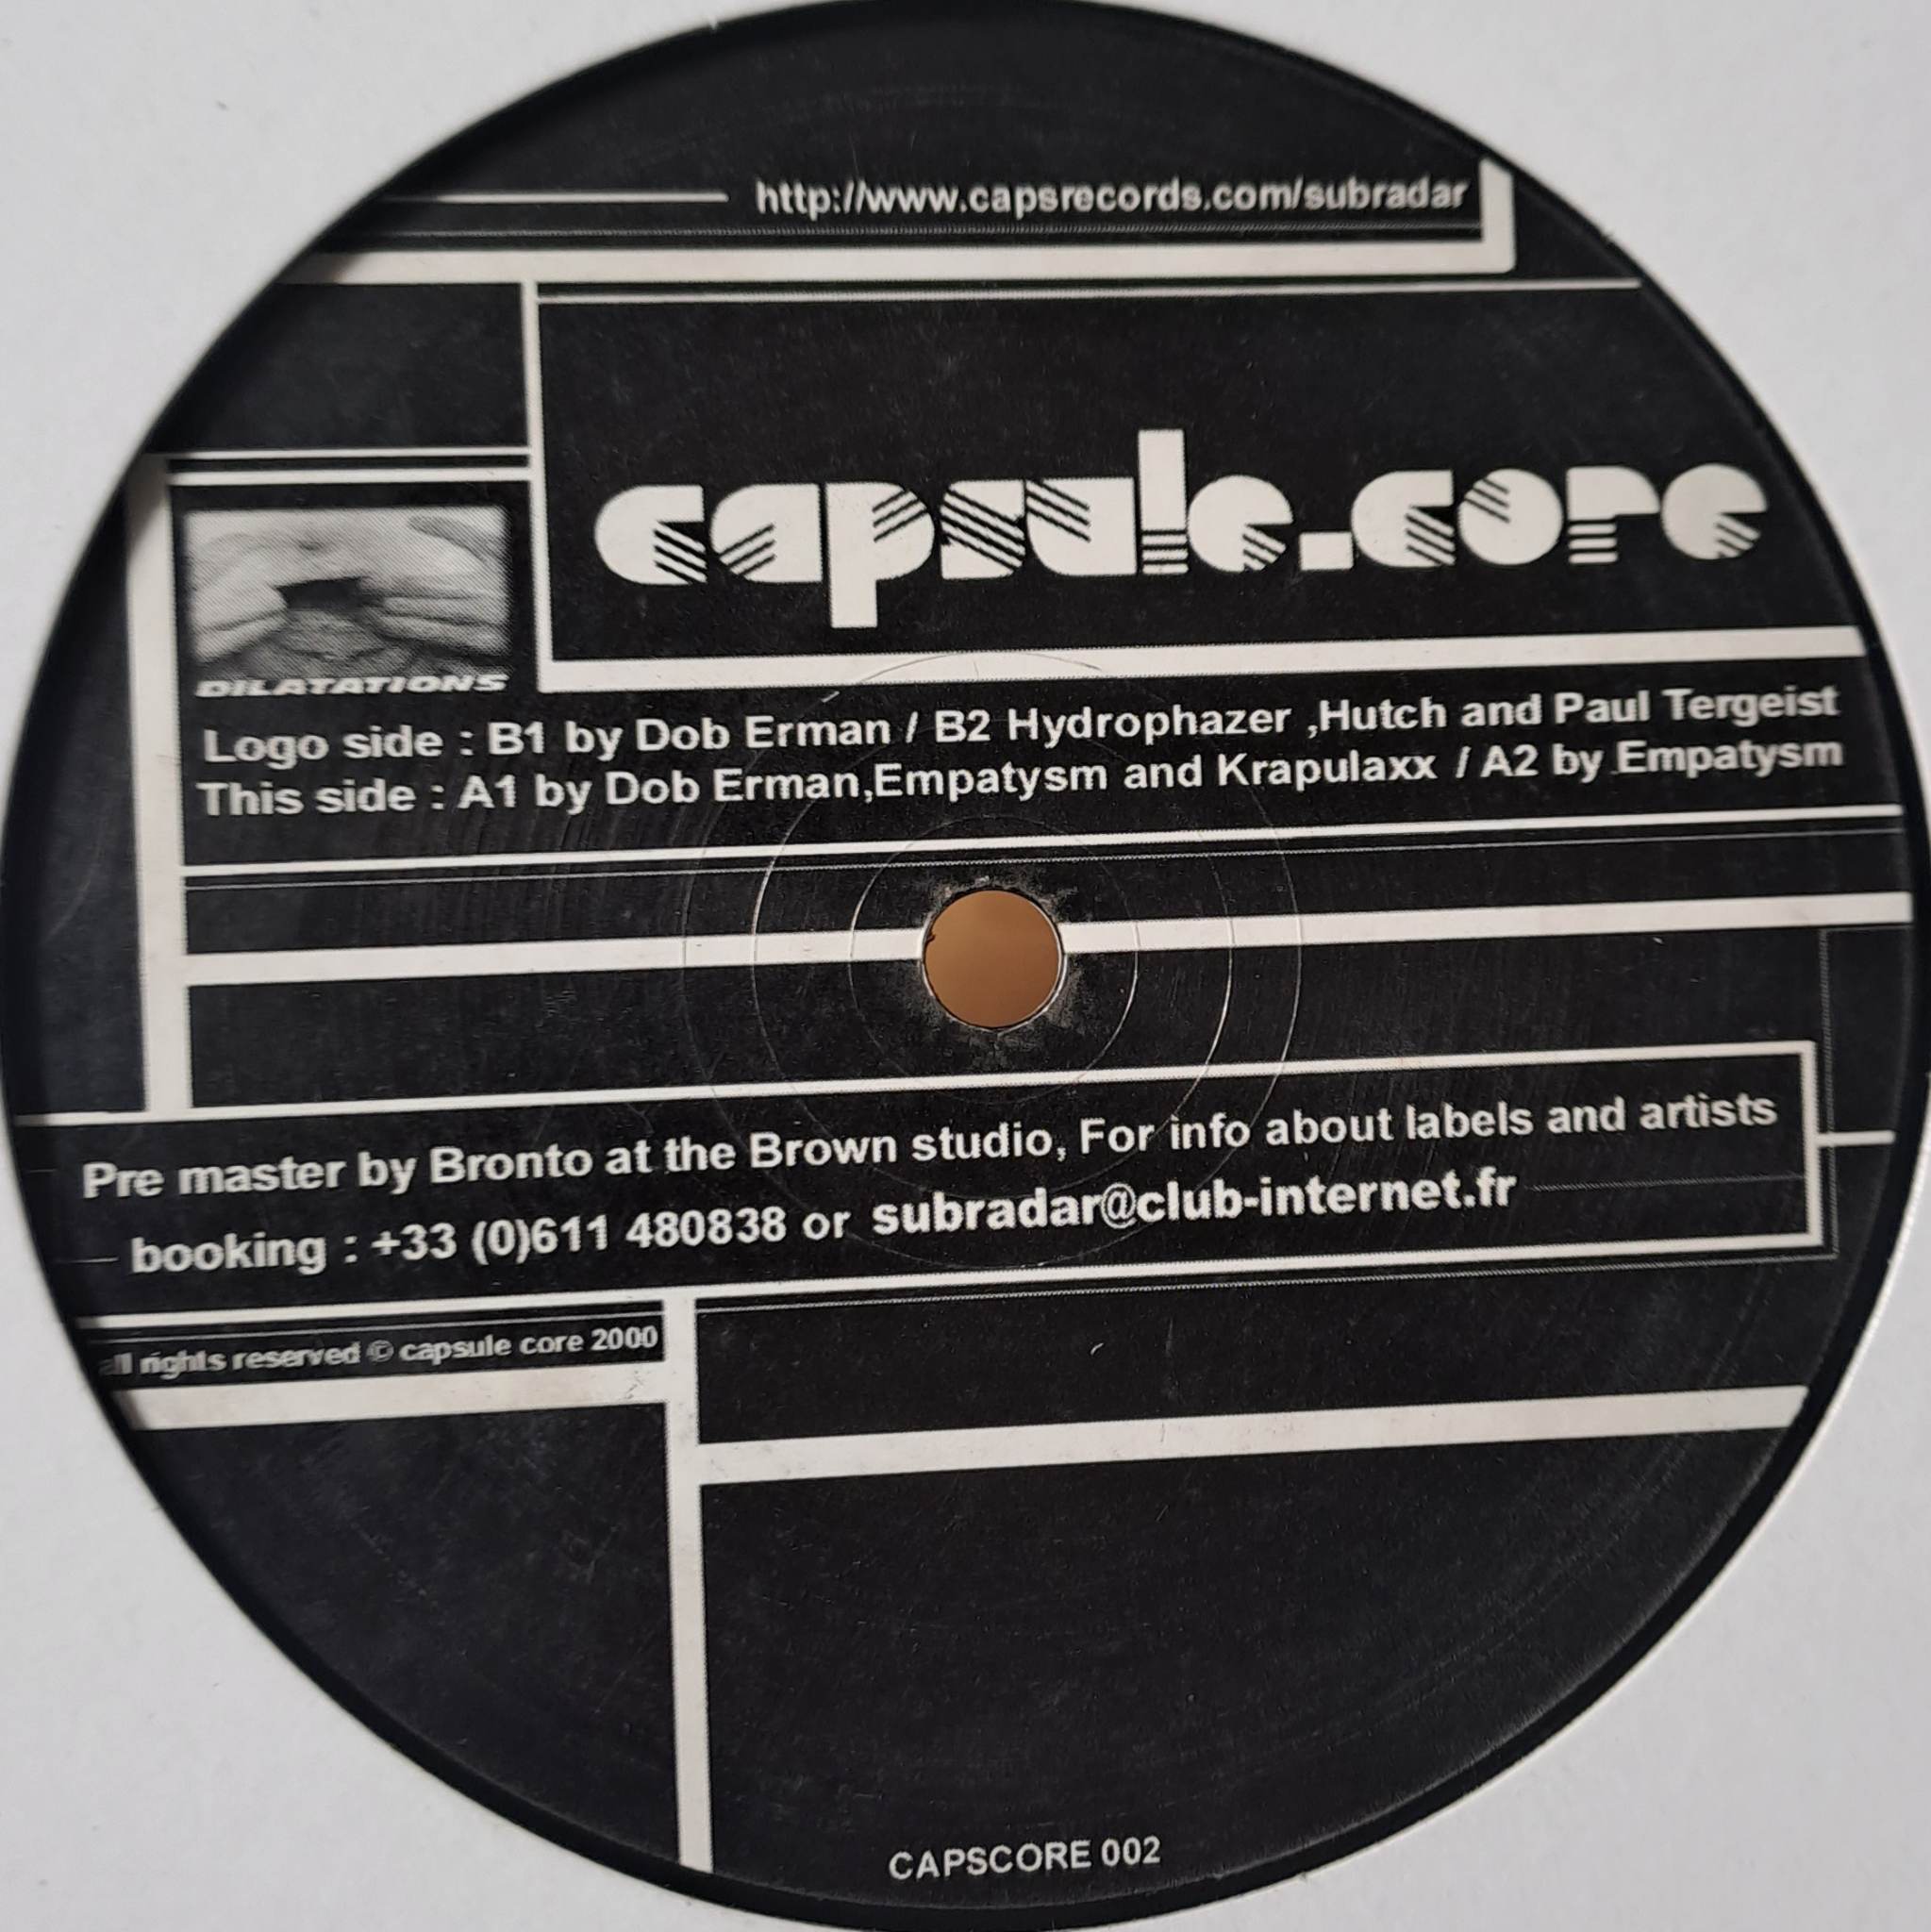 Capsule Core 02 - vinyle hardcore